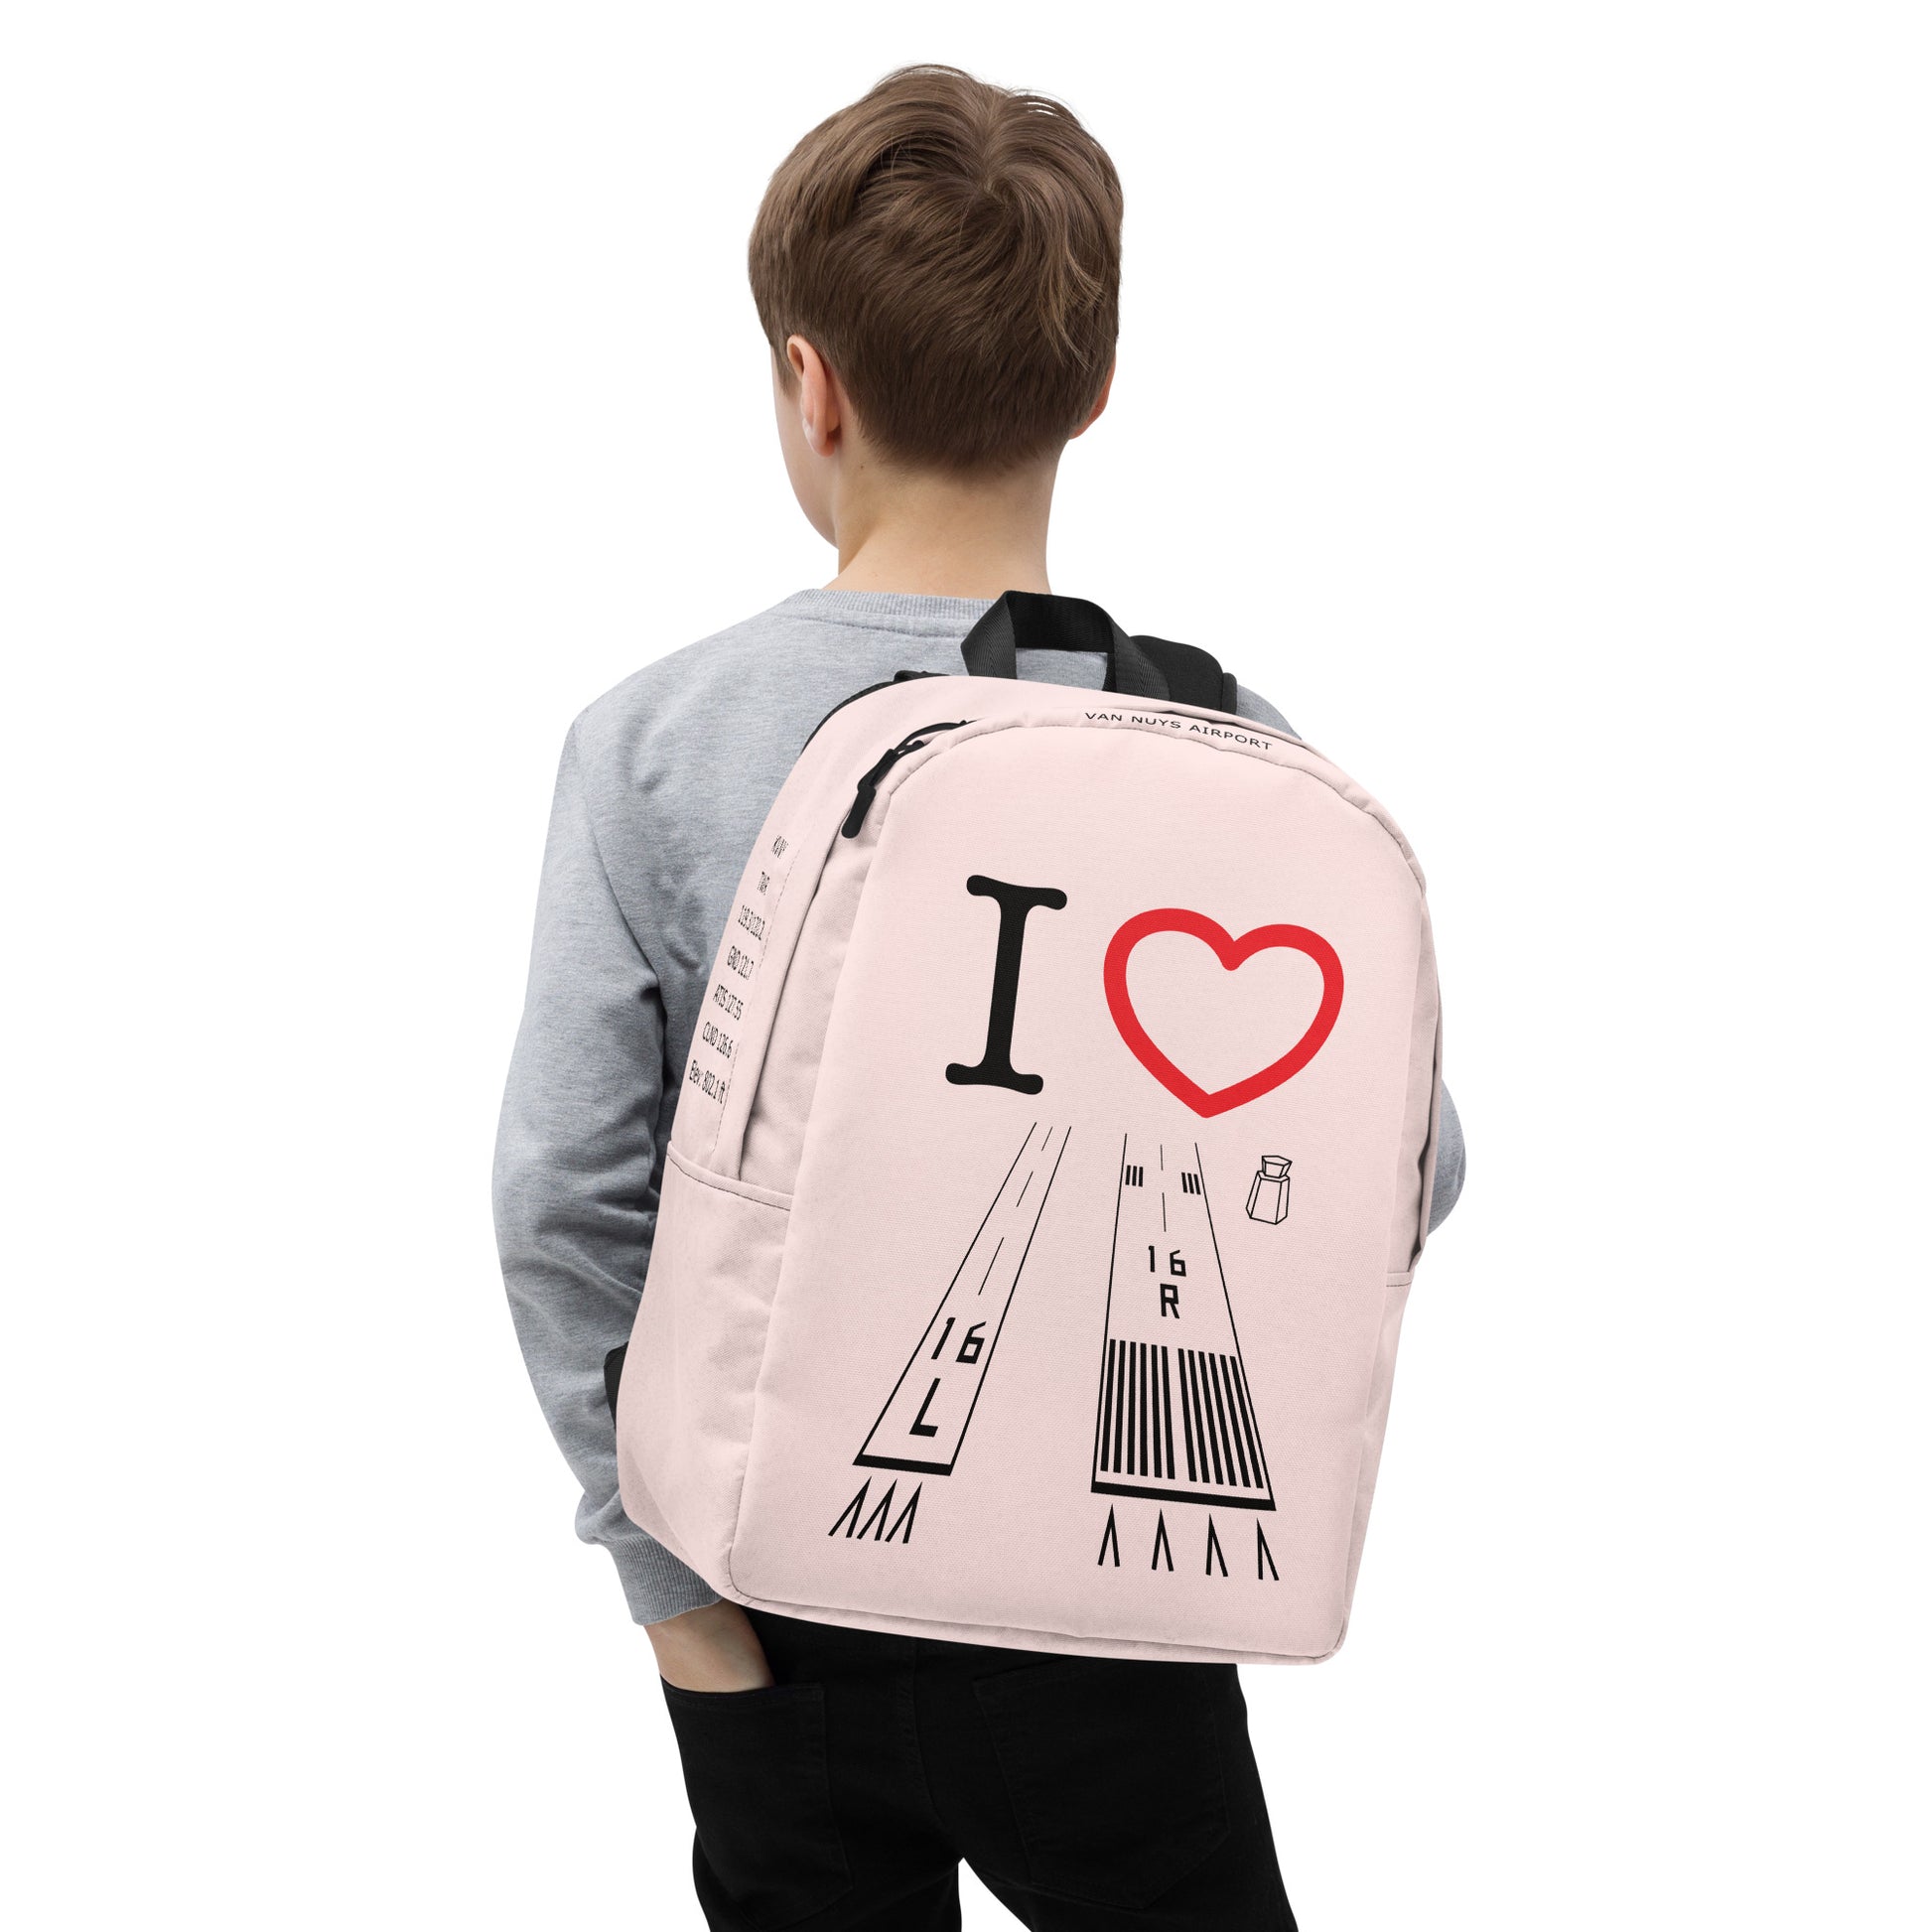 Van Nuys Airport Runways 16L / 16R - light pink minimalist backpack